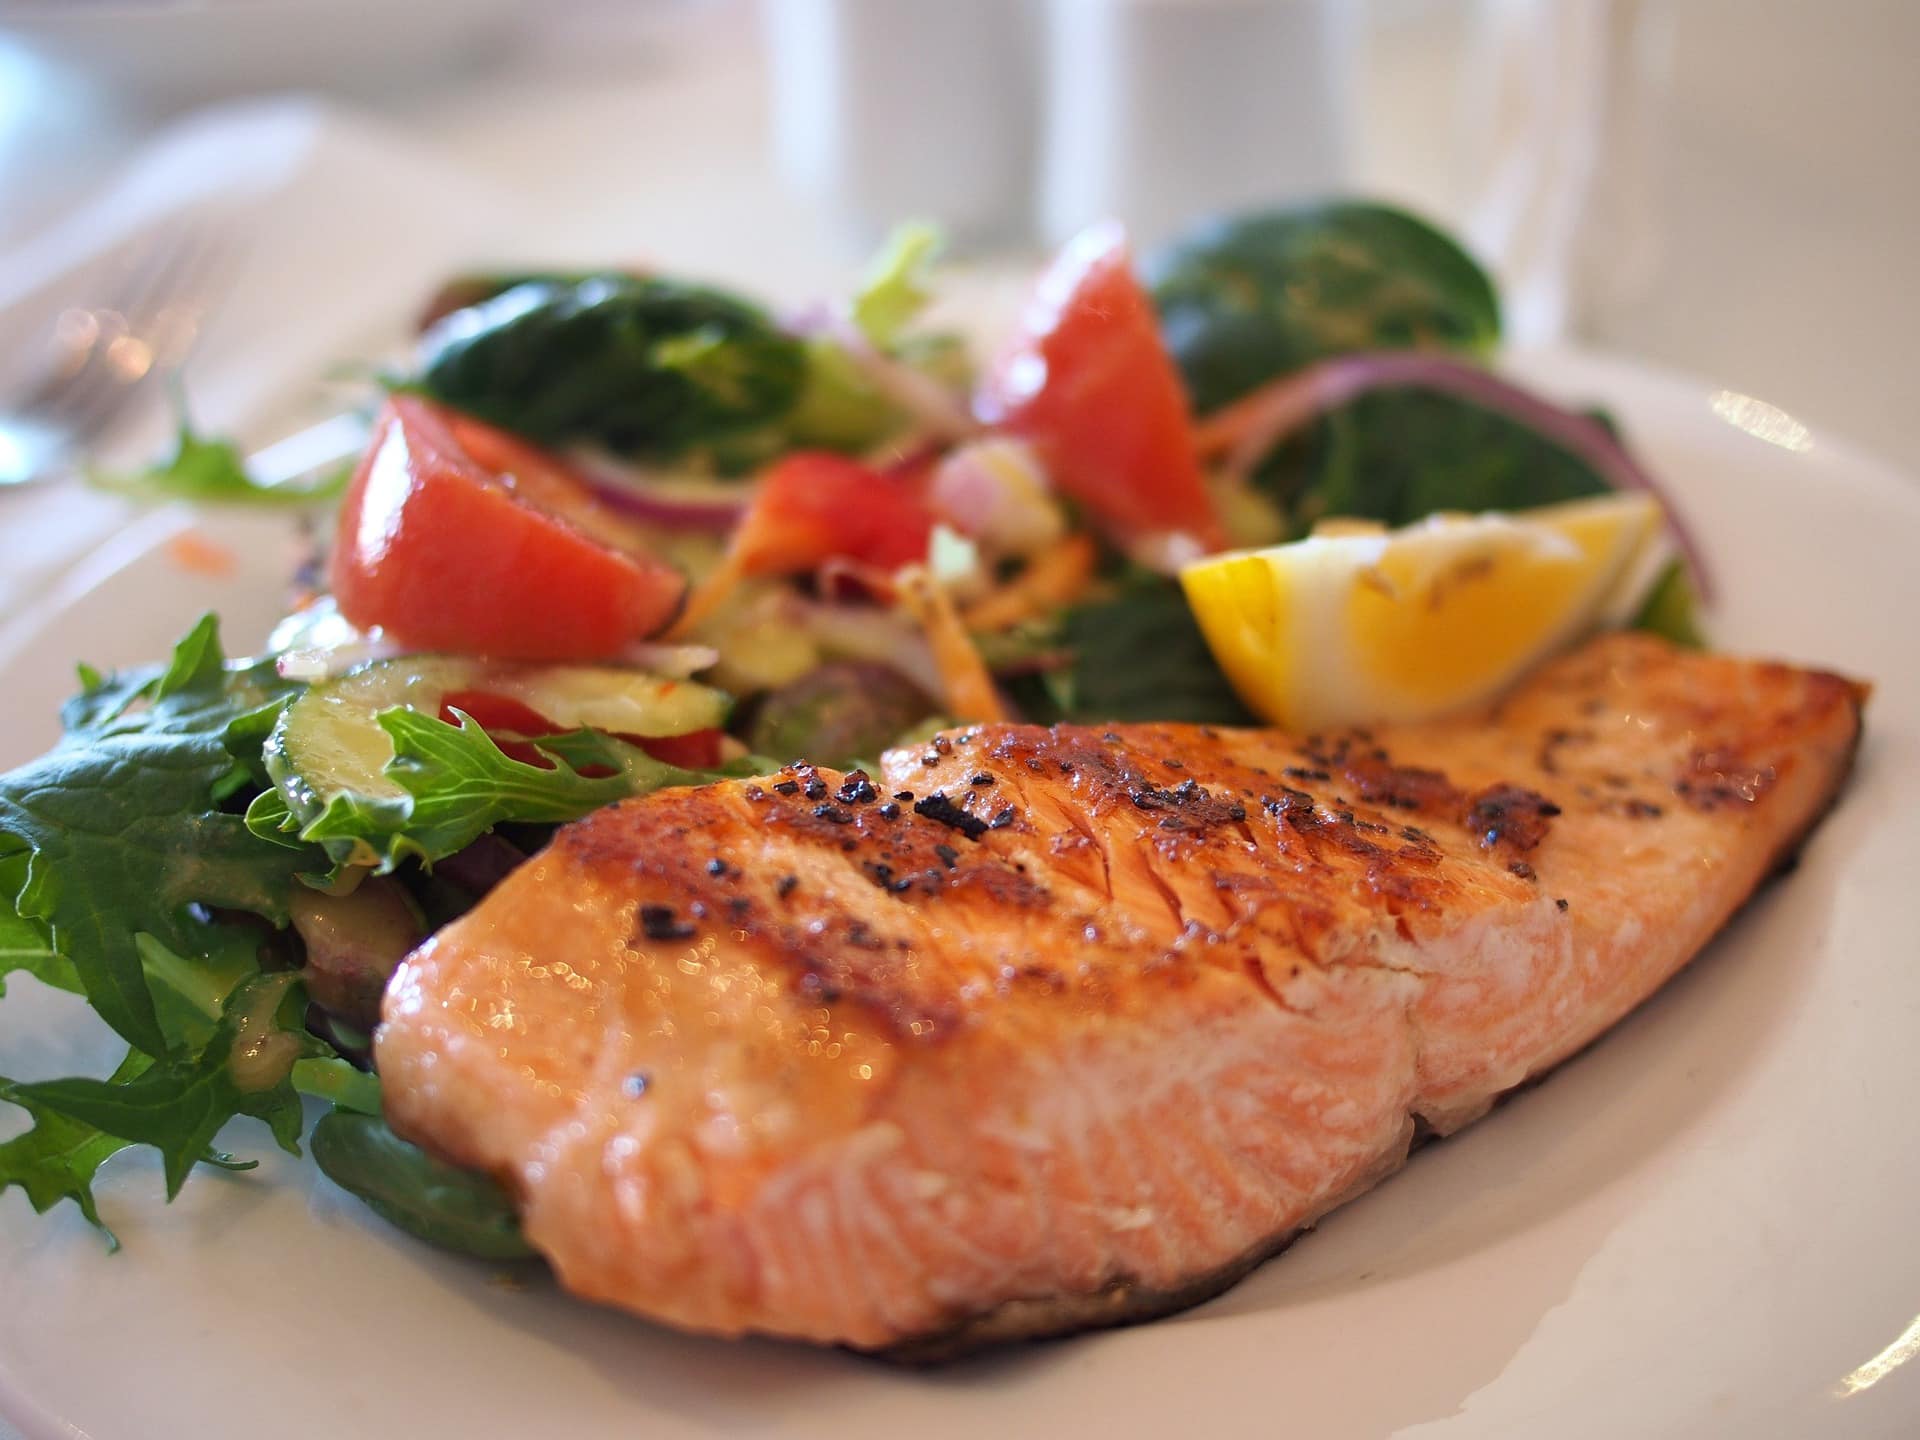 Une assiette du Menus de la semaine déjeuner et diner, mettant en valeur un filet de saumon joliment grillé, accompagné de légumes frais.